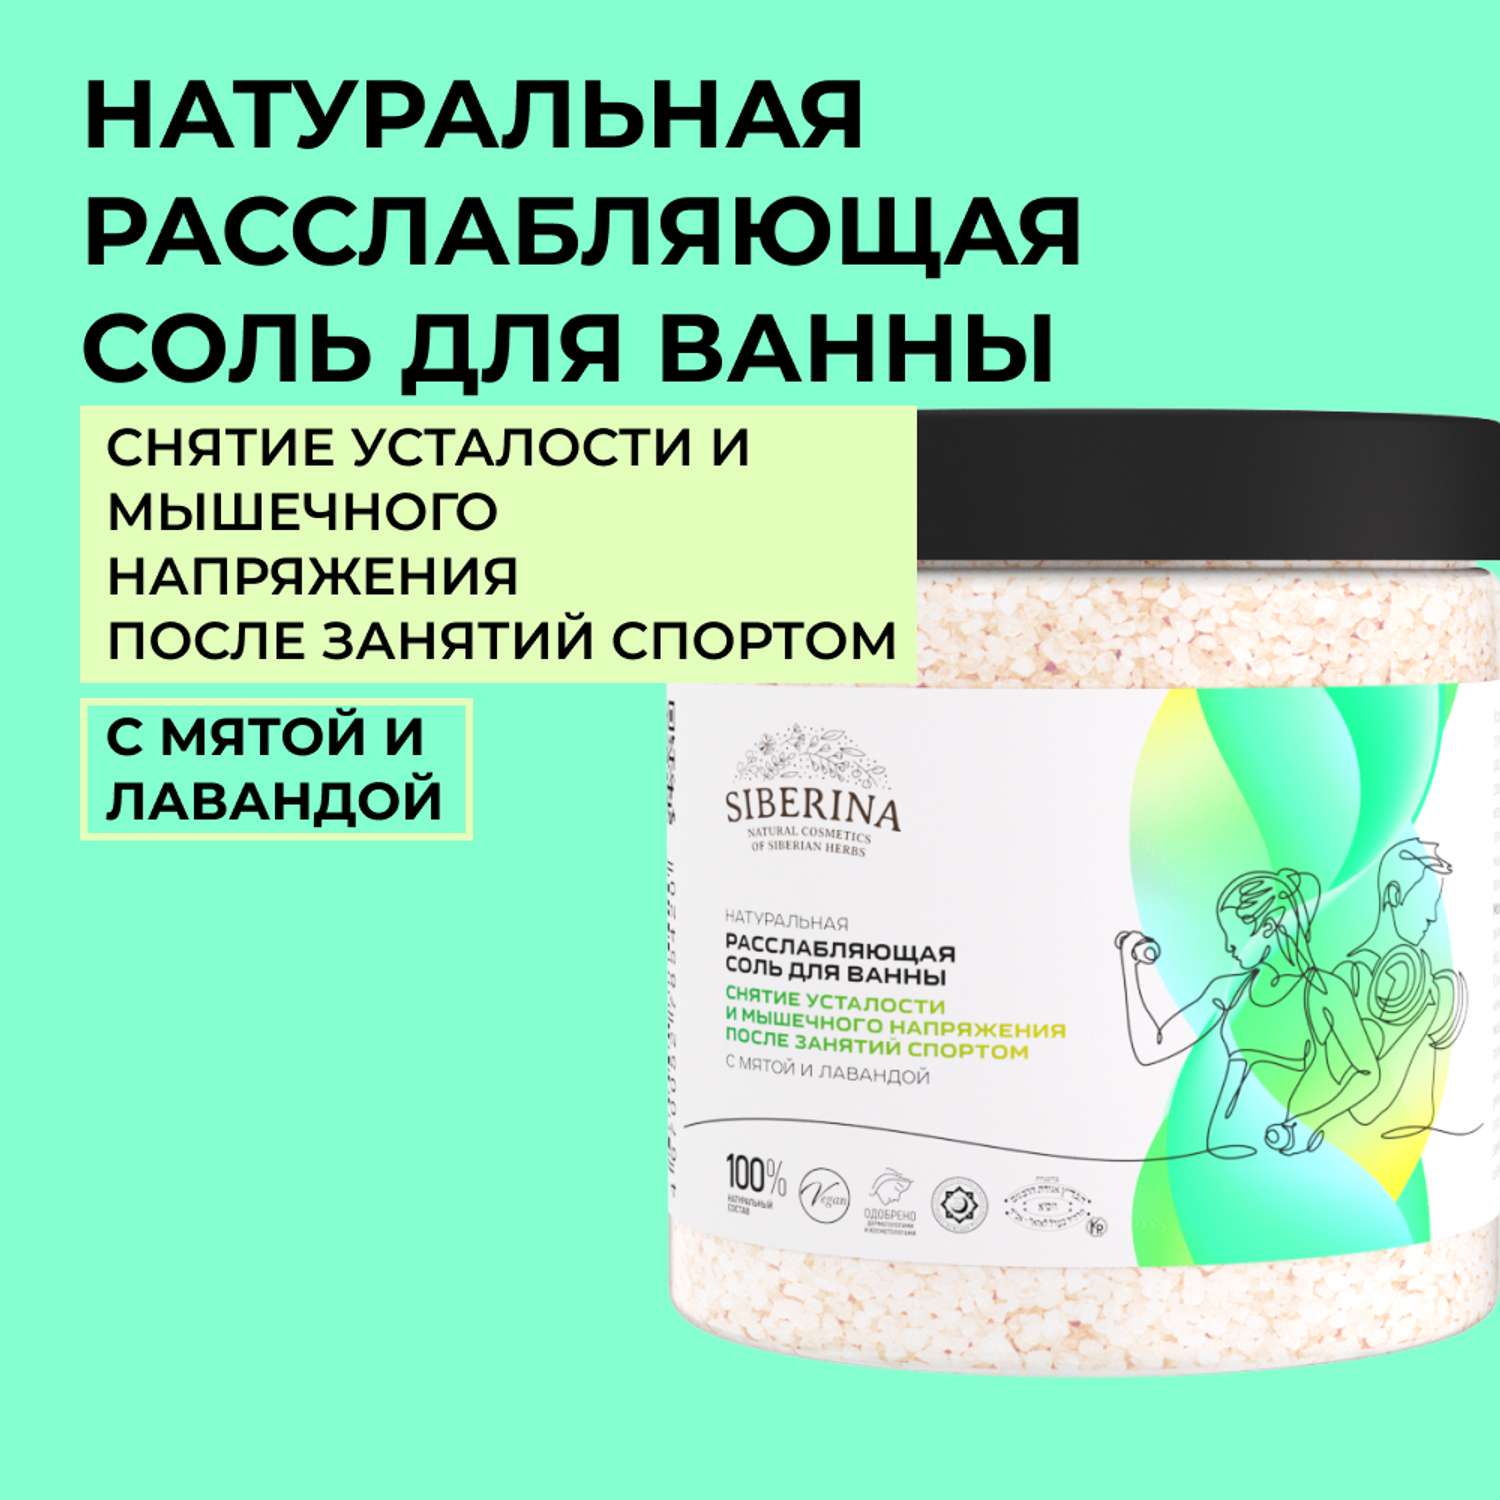 Соль для ванны Siberina натуральная «Снятие усталости и мышечного напряжения» морская расслабляющая 600 г - фото 1